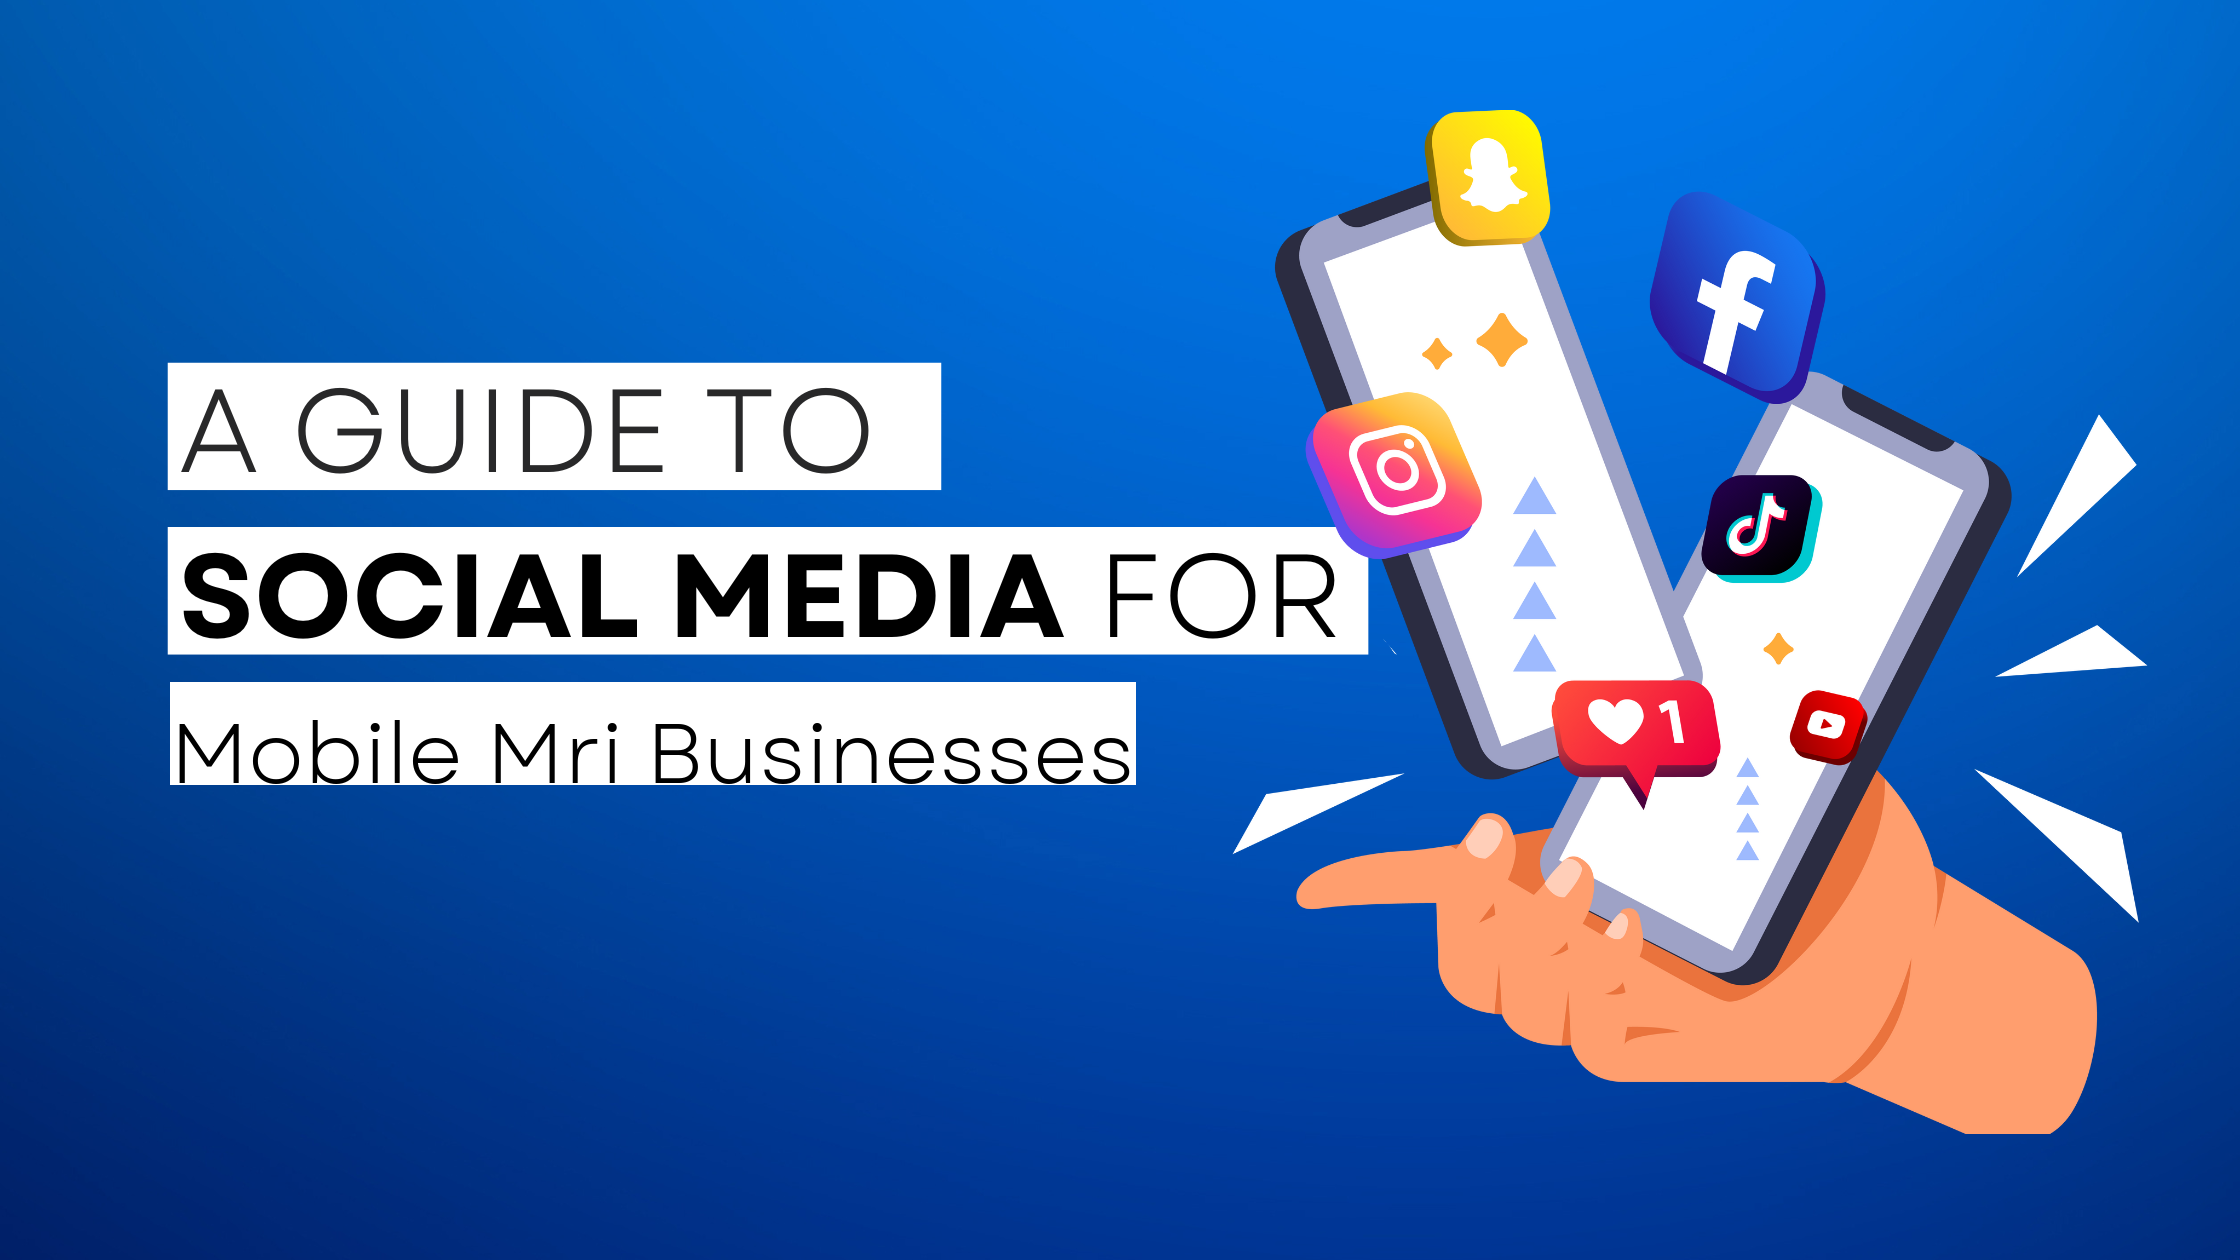 How to start Mobile Mri  on social media